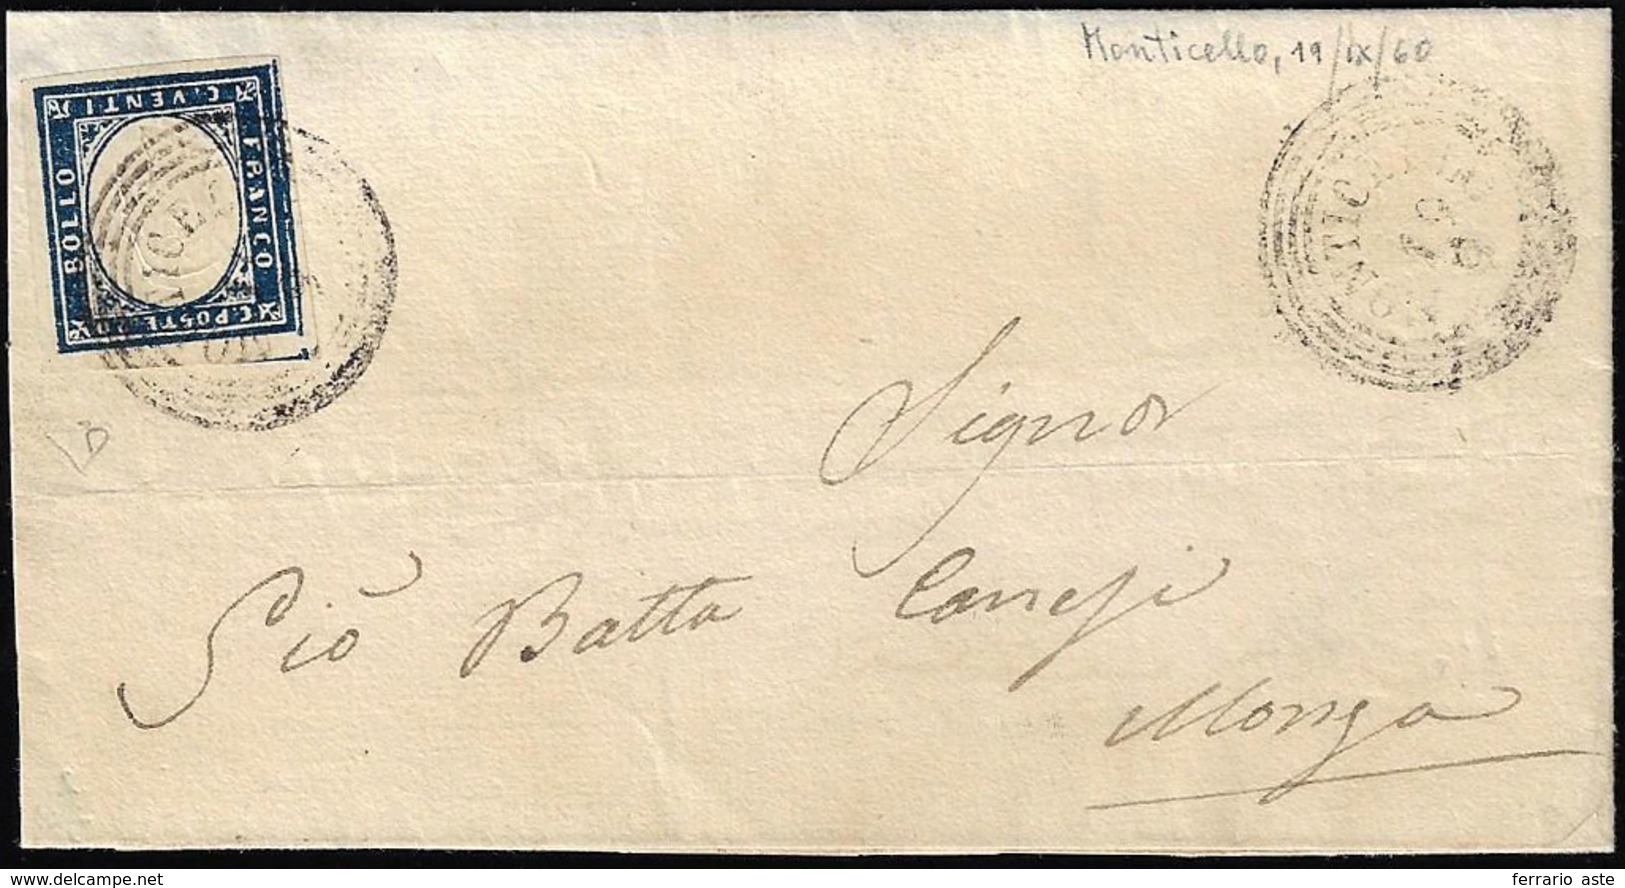 MONTICELLO, C4 Punti 8 - 20 Cent. (Sardegna 15C), Perfetto, Su Lettera Del 19/9/1860 Per Monza. E.Di... - Lombardo-Vénétie